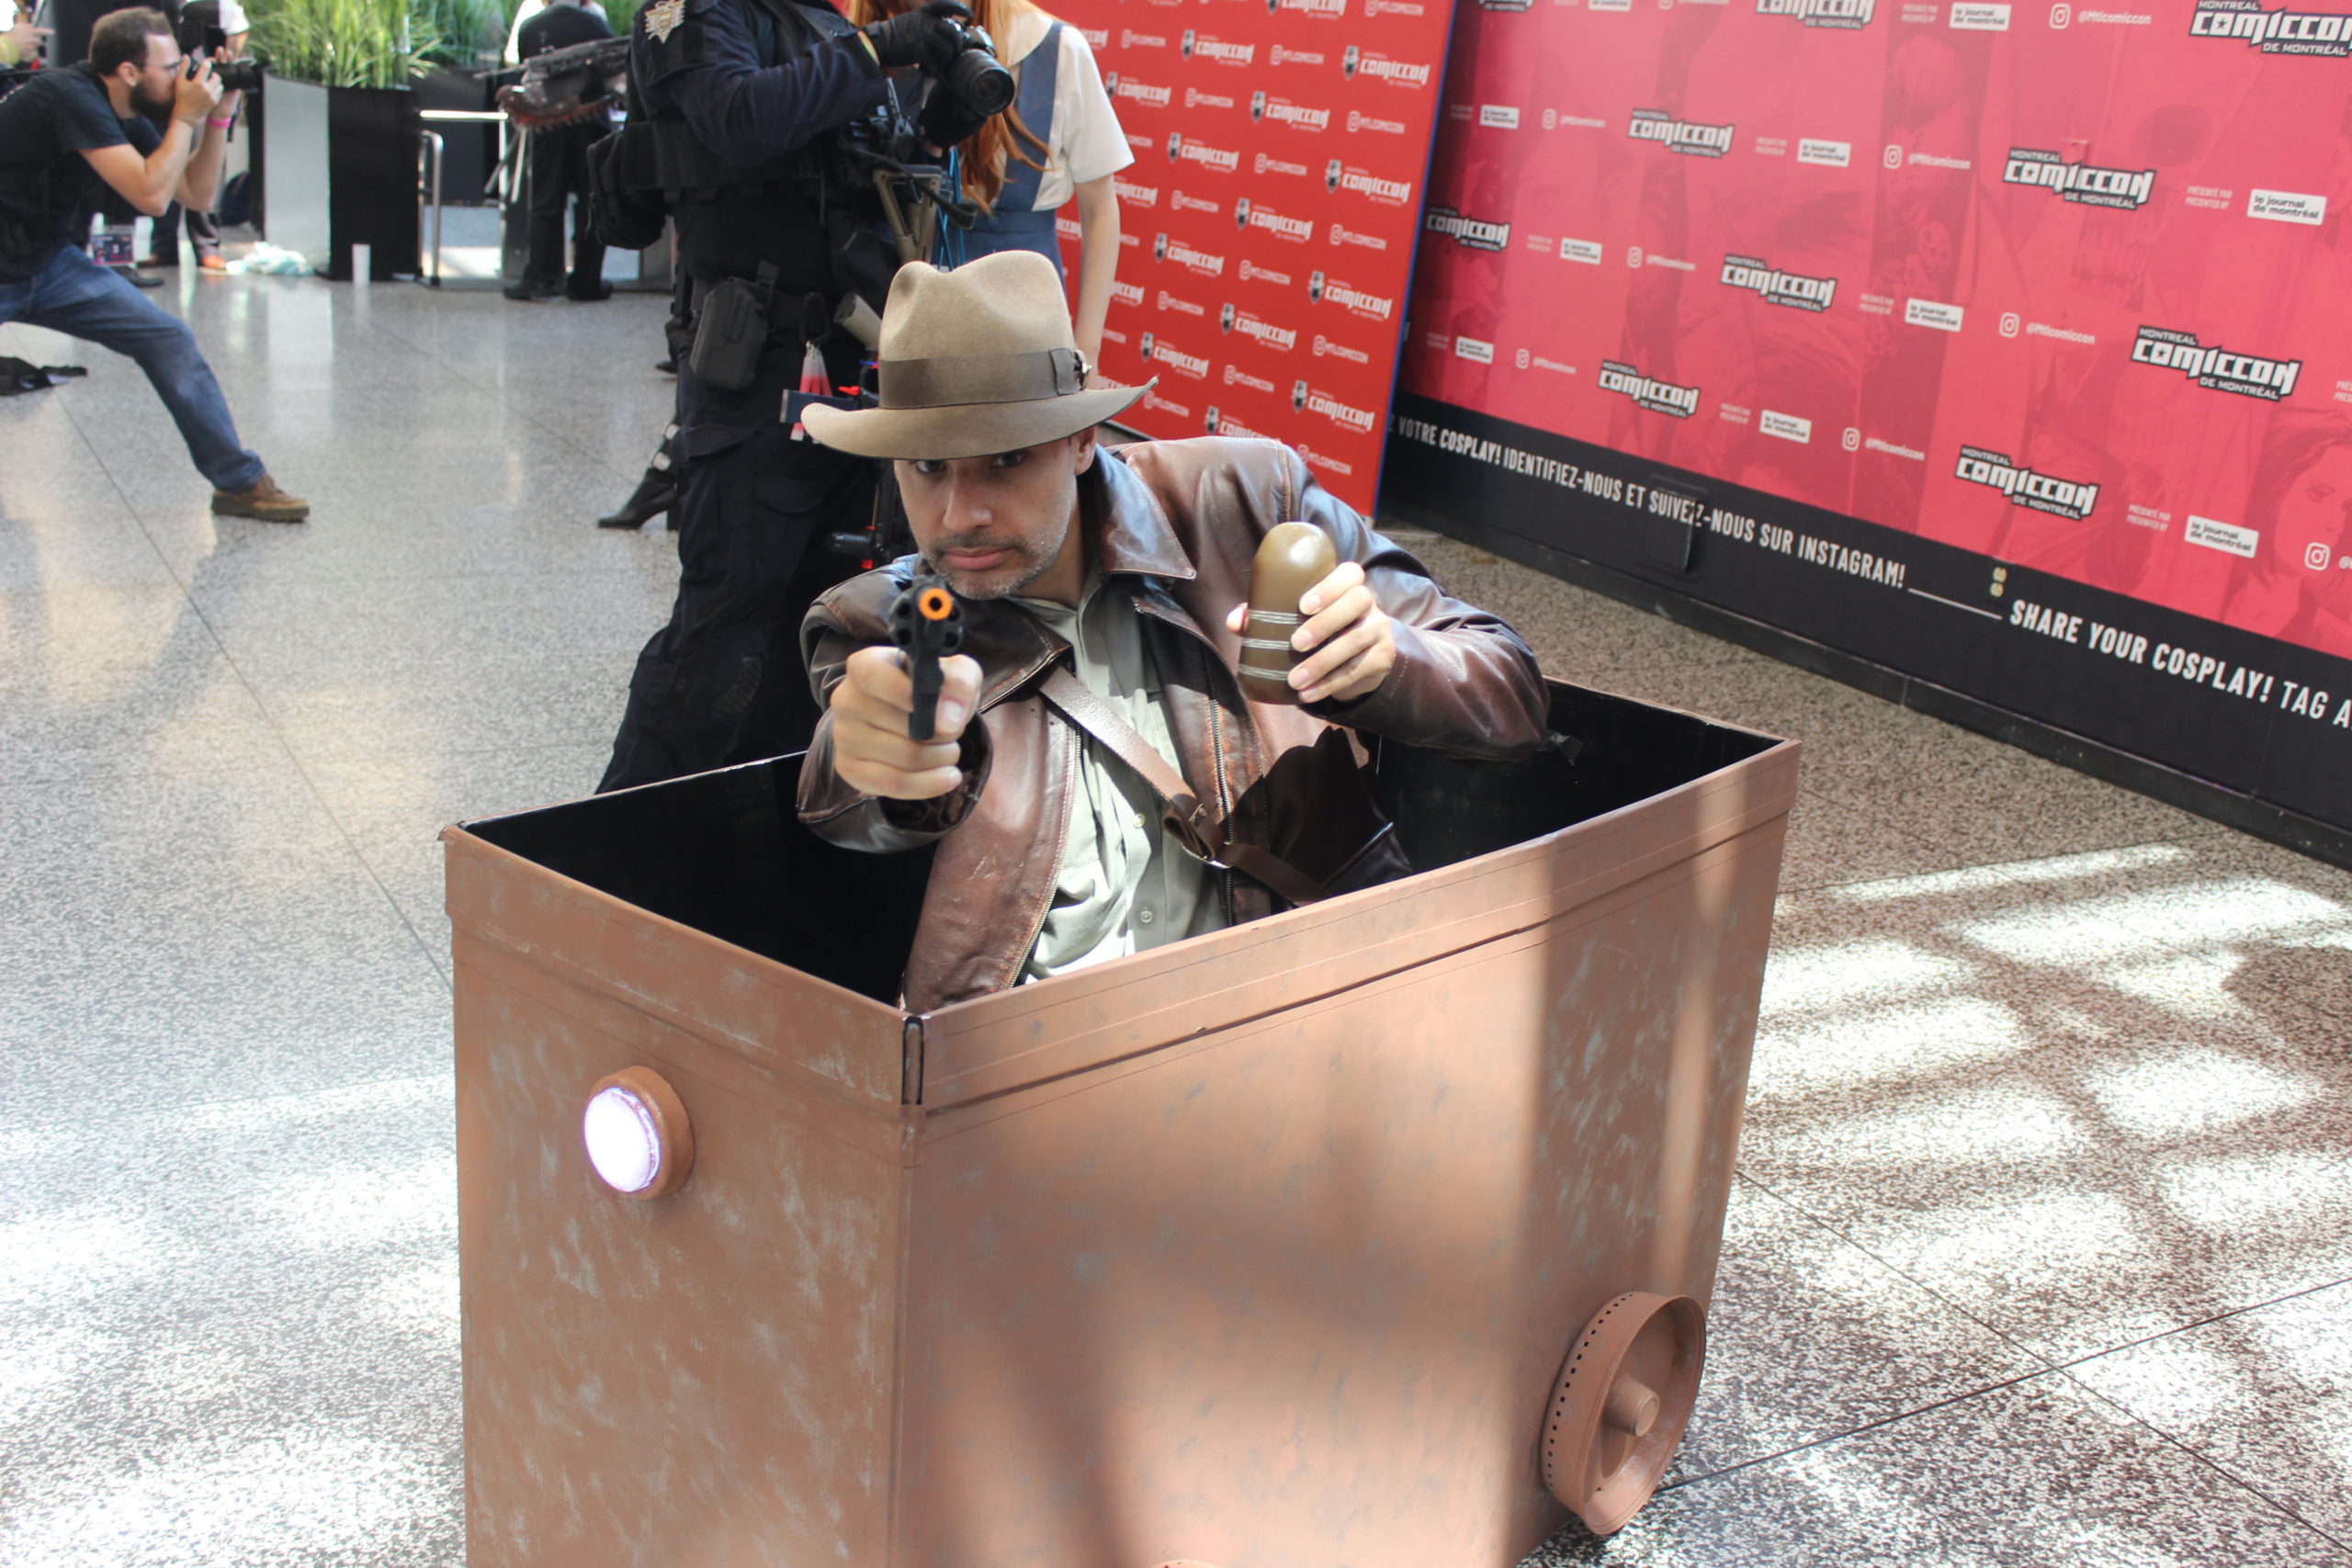 Indiana Jones, à l'époque du Temple Maudit, s'est déplacé en chariot de mine pour se rendre au Comiccon